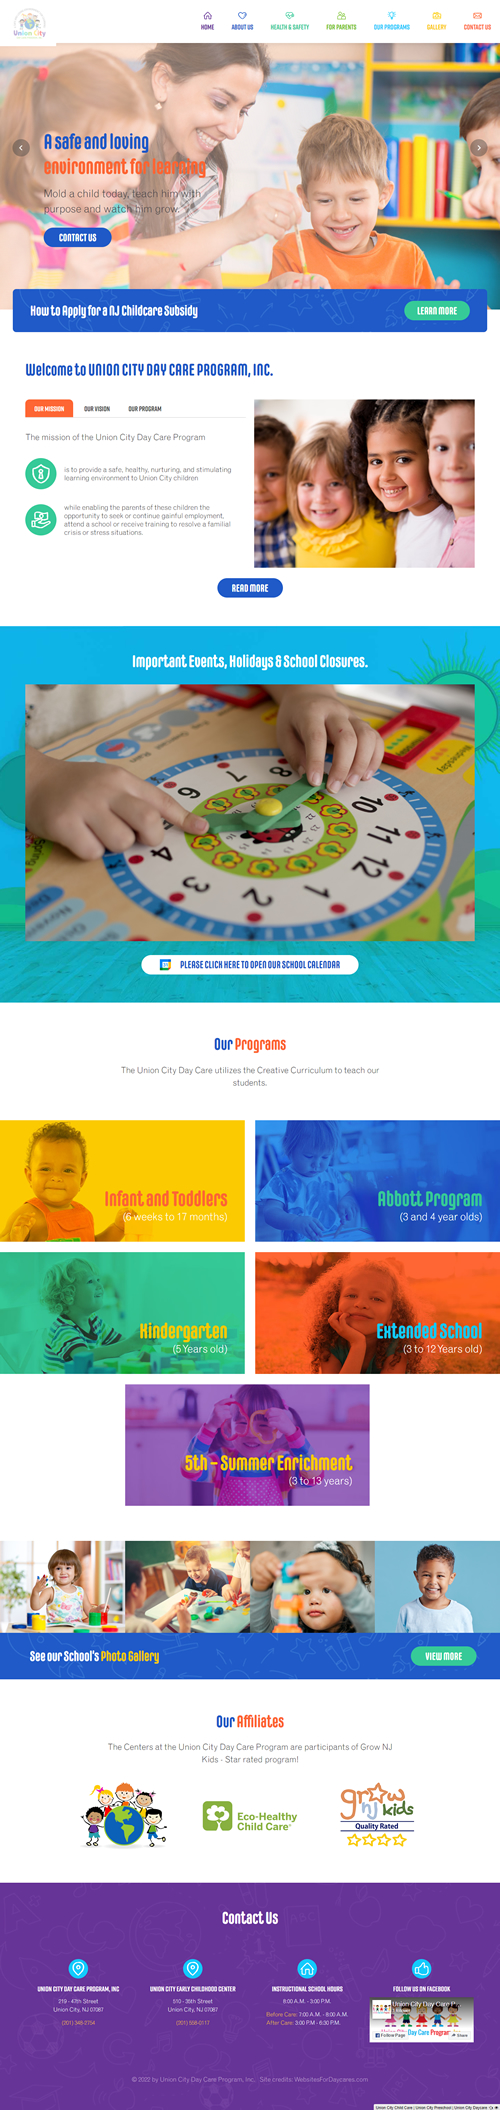 Custom Child Care Website Design by Websites for Daycares